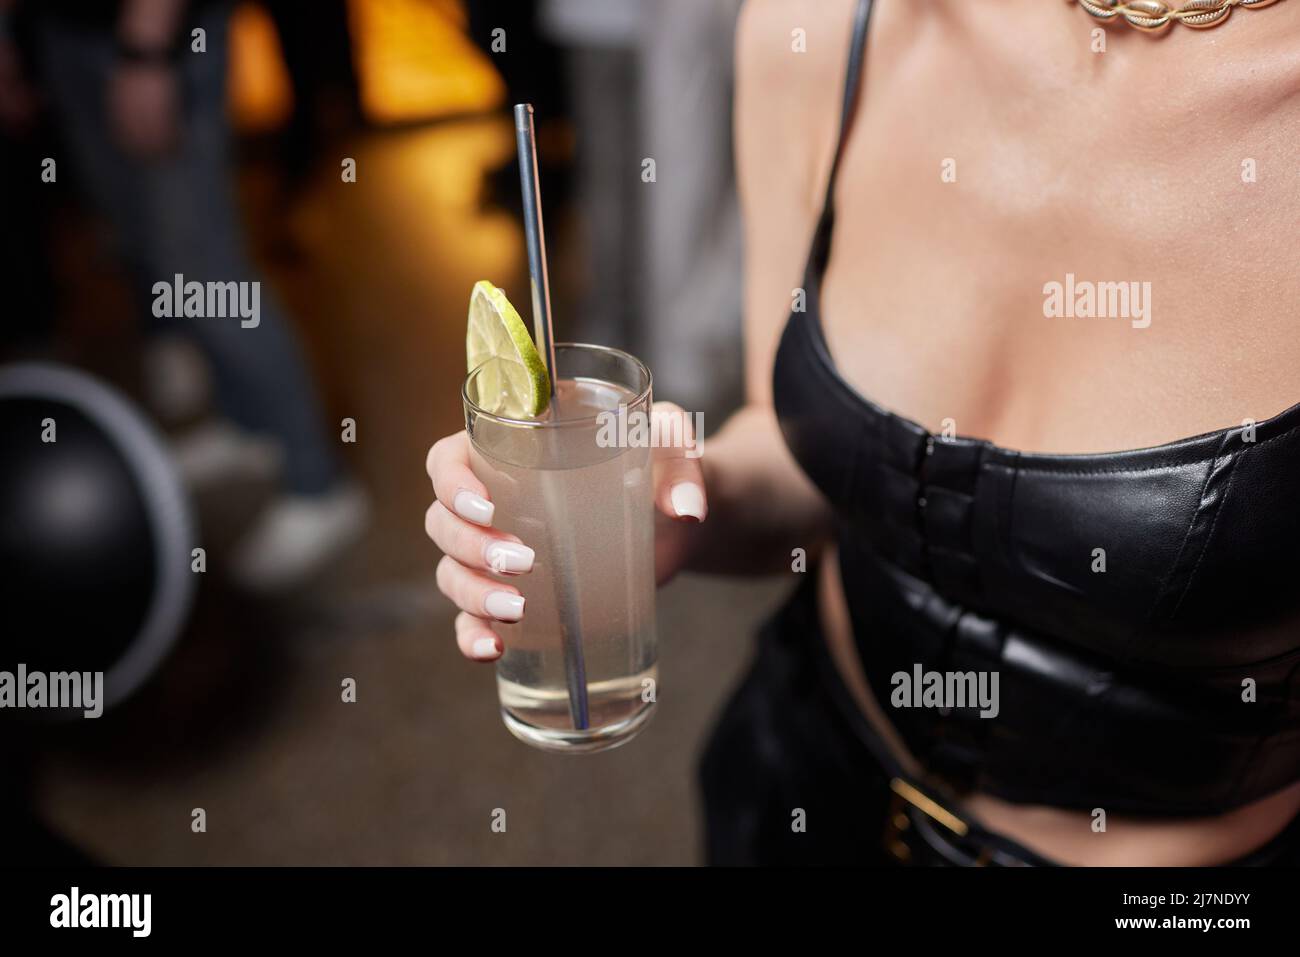 Primo piano immagine ritagliata di donna che tiene dolci cocktail gustosi limonata, elegante hipster outfit alla moda e gioielli eleganti, colori tonici, atmosfera da bar Foto Stock